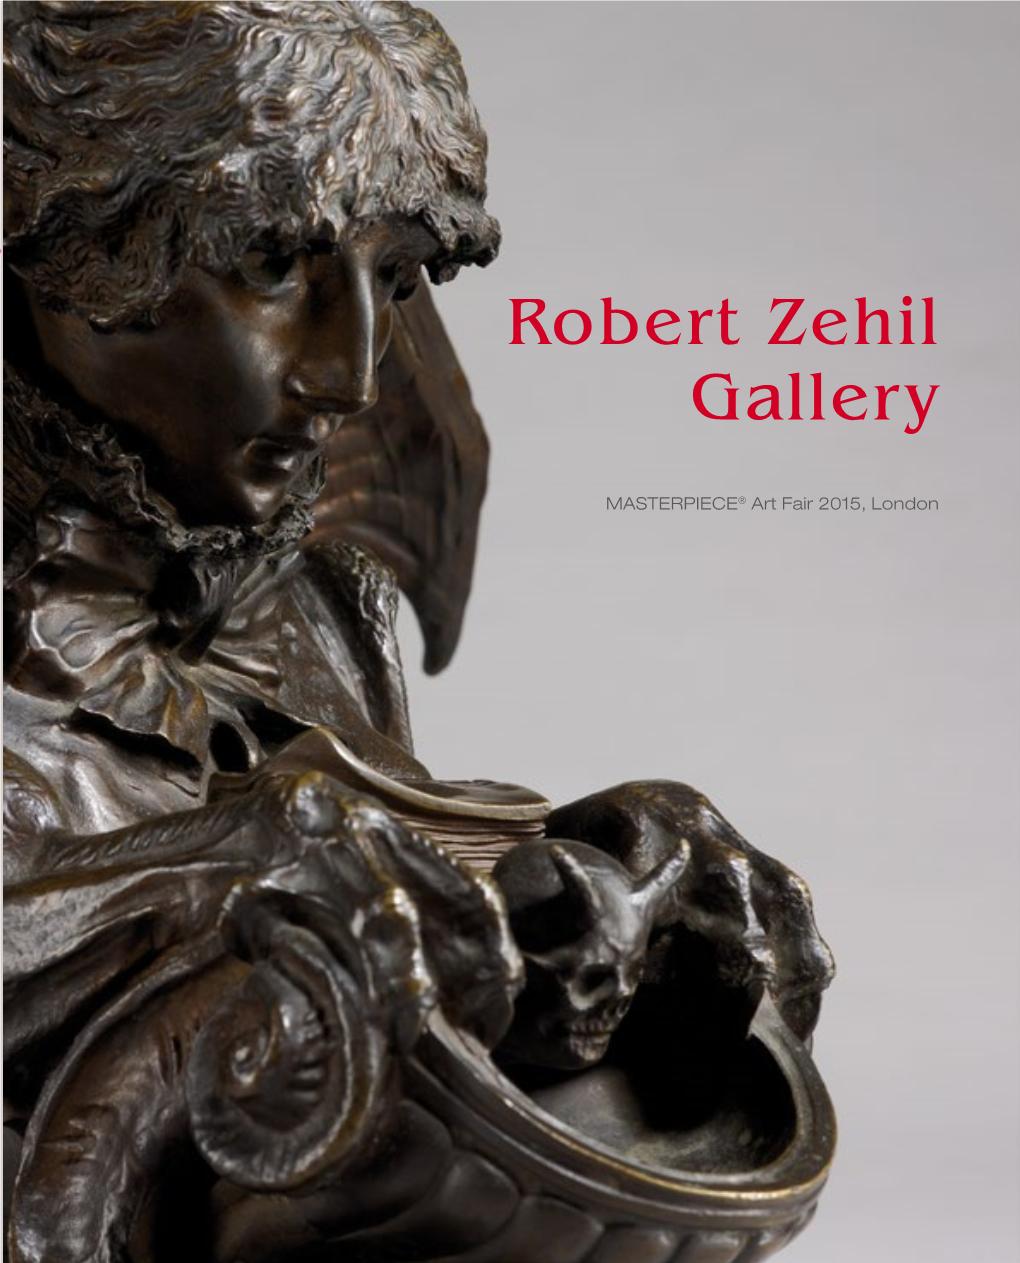 Robert Zehil Gallery MASTERPIECE® Art Fair 2015, London Art Fair 2015 ®